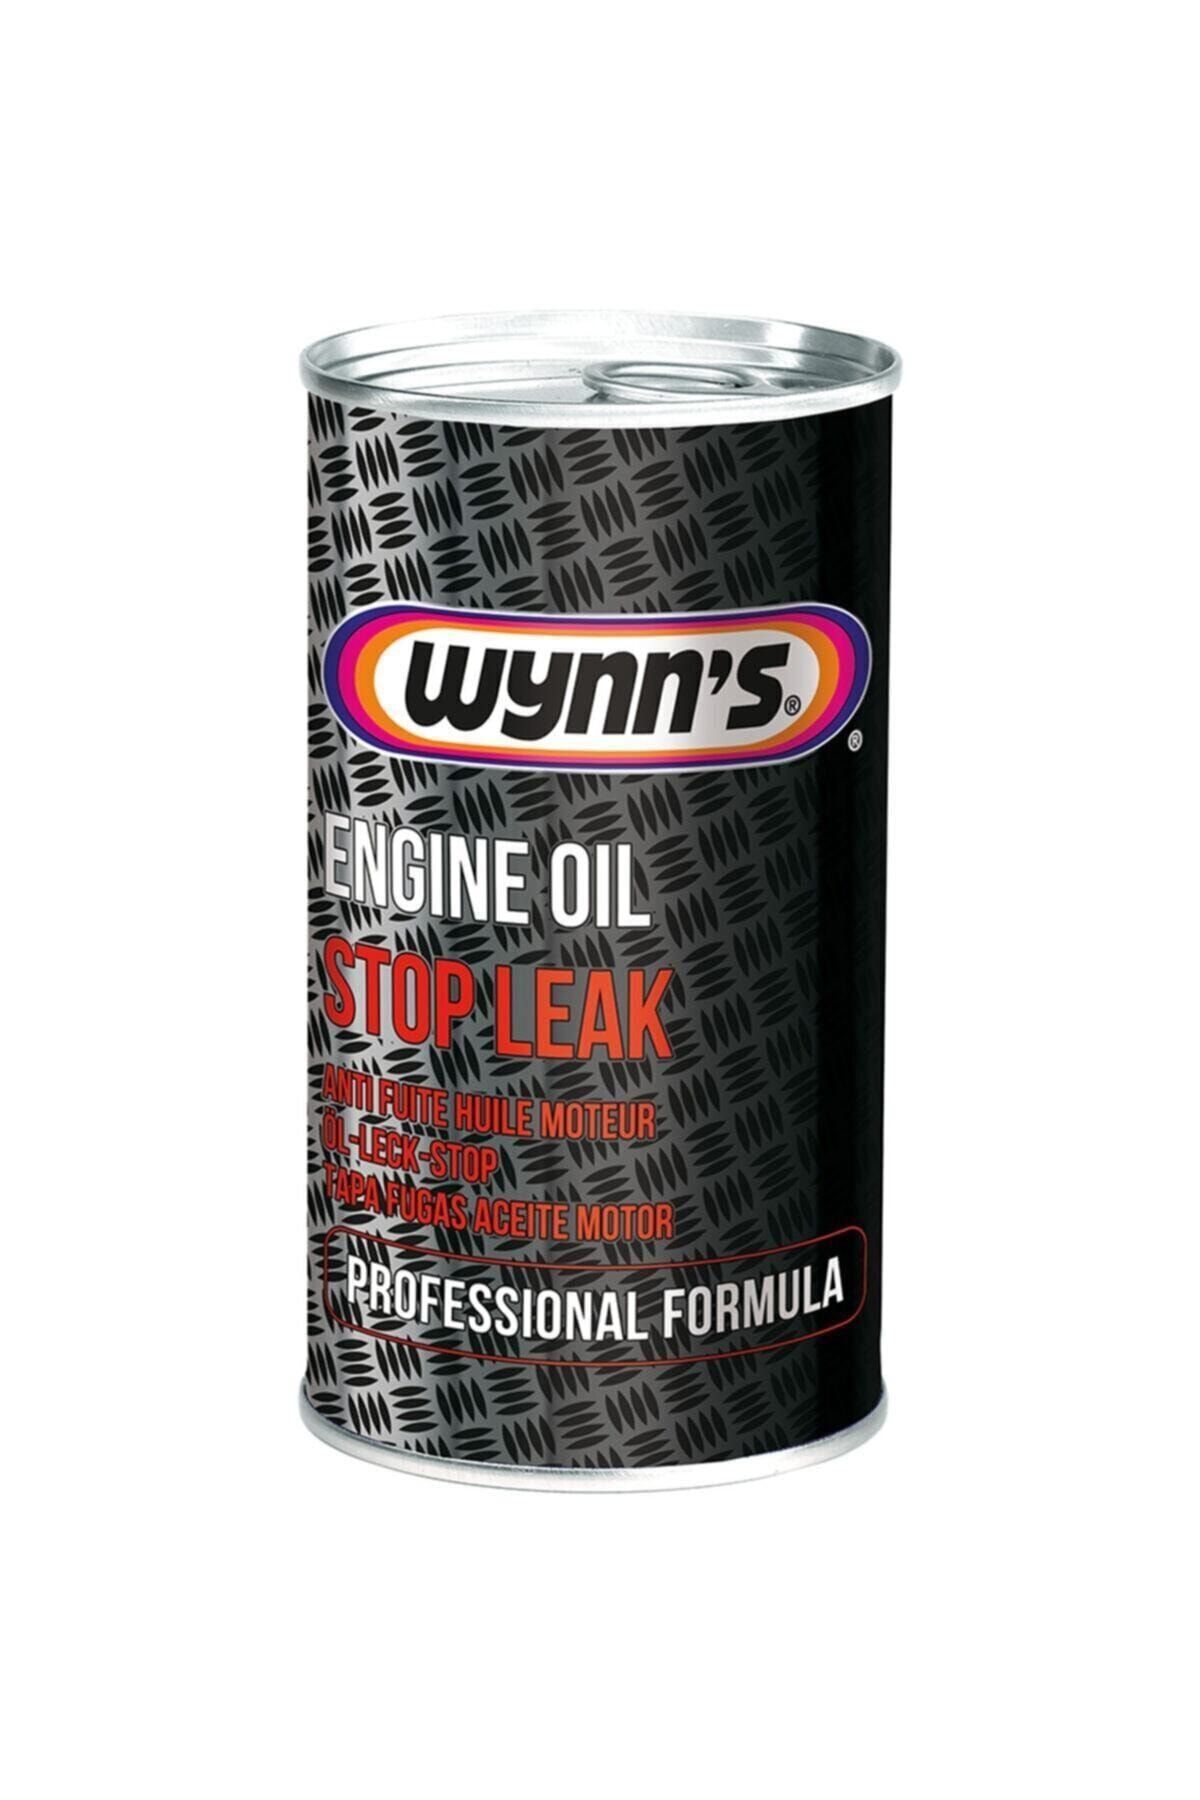 Wynns Engine Oil Stop Leak Wynn's Motor Yağ Sızıntı Kaçak Önleyici Yağ Katığı Katkısı 325ml